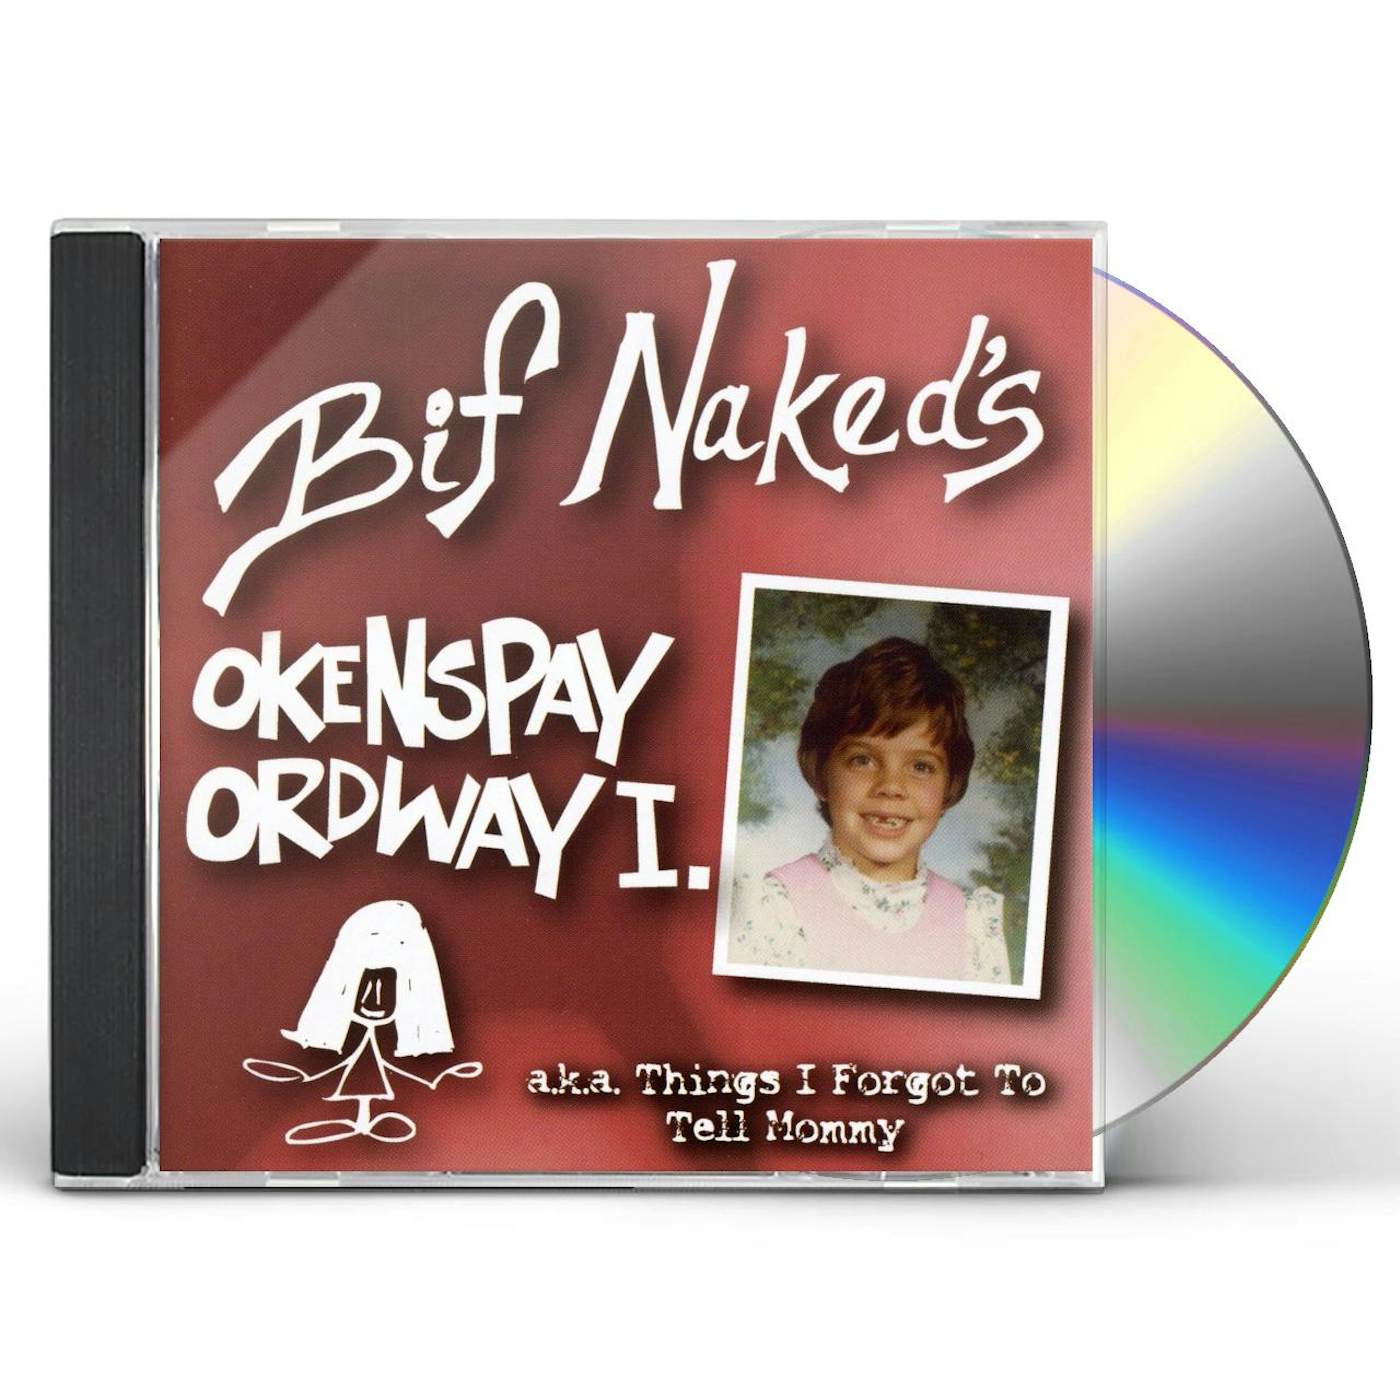 Bif Naked OKENSPAY ORDWAY CD